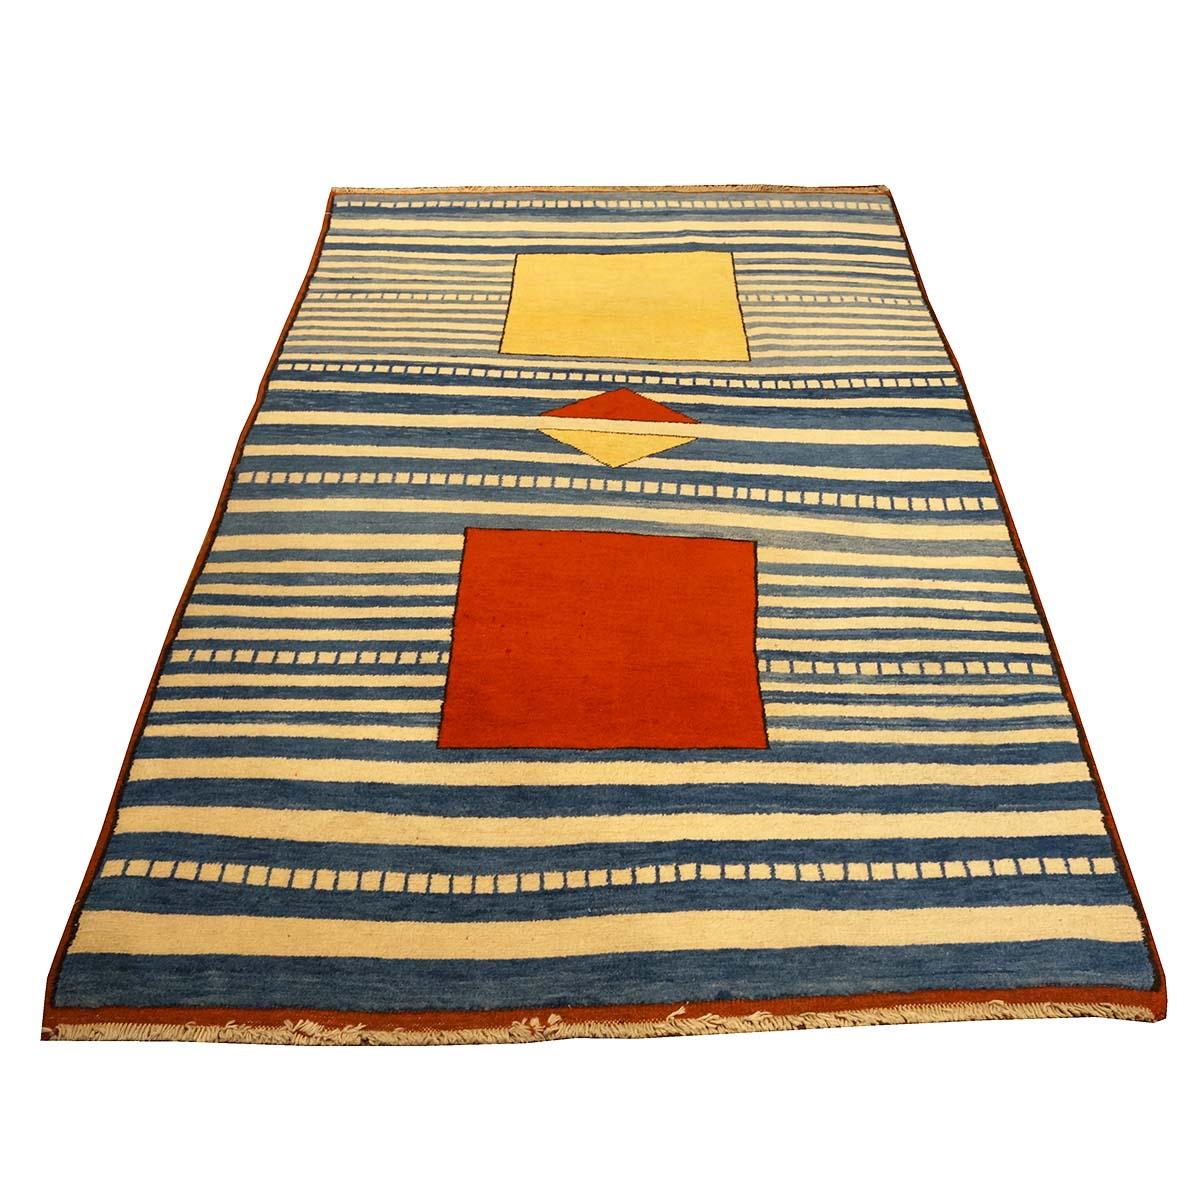 Ashly Fine Rugs présente un tapis turc Gabbeh 4x7 bleu et ivoire du 21ème siècle, fait à la main. Les tapis Gabbeh ont été fabriqués à l'origine par les femmes des tribus Qashgai du sud-ouest de la Perse et sont connus pour leur design simple, leurs